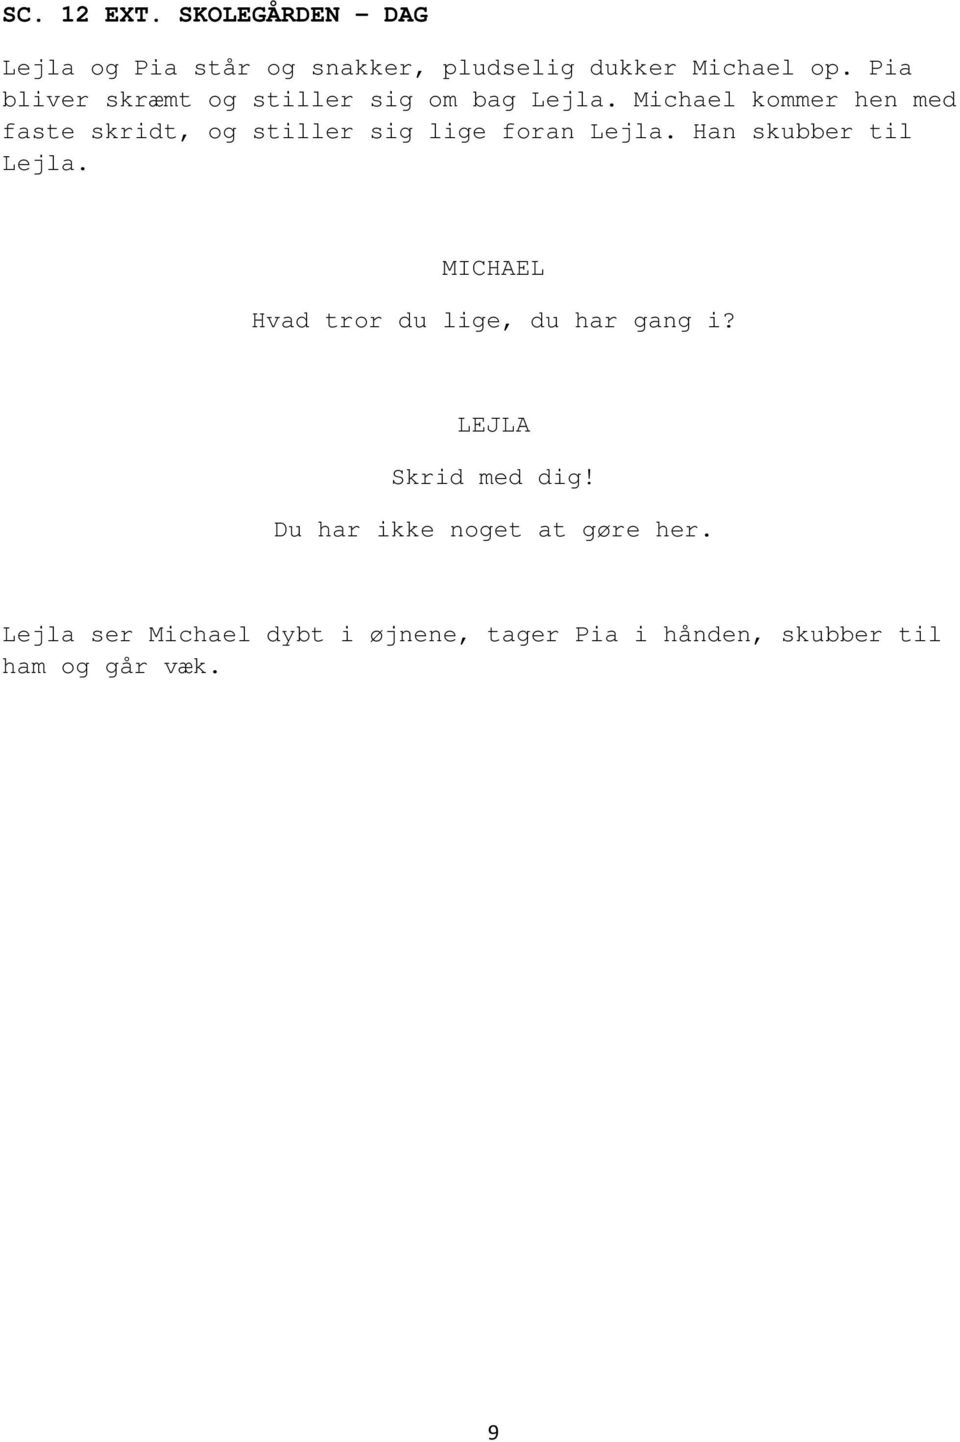 Michael kommer hen med faste skridt, og stiller sig lige foran Lejla. Han skubber til Lejla.